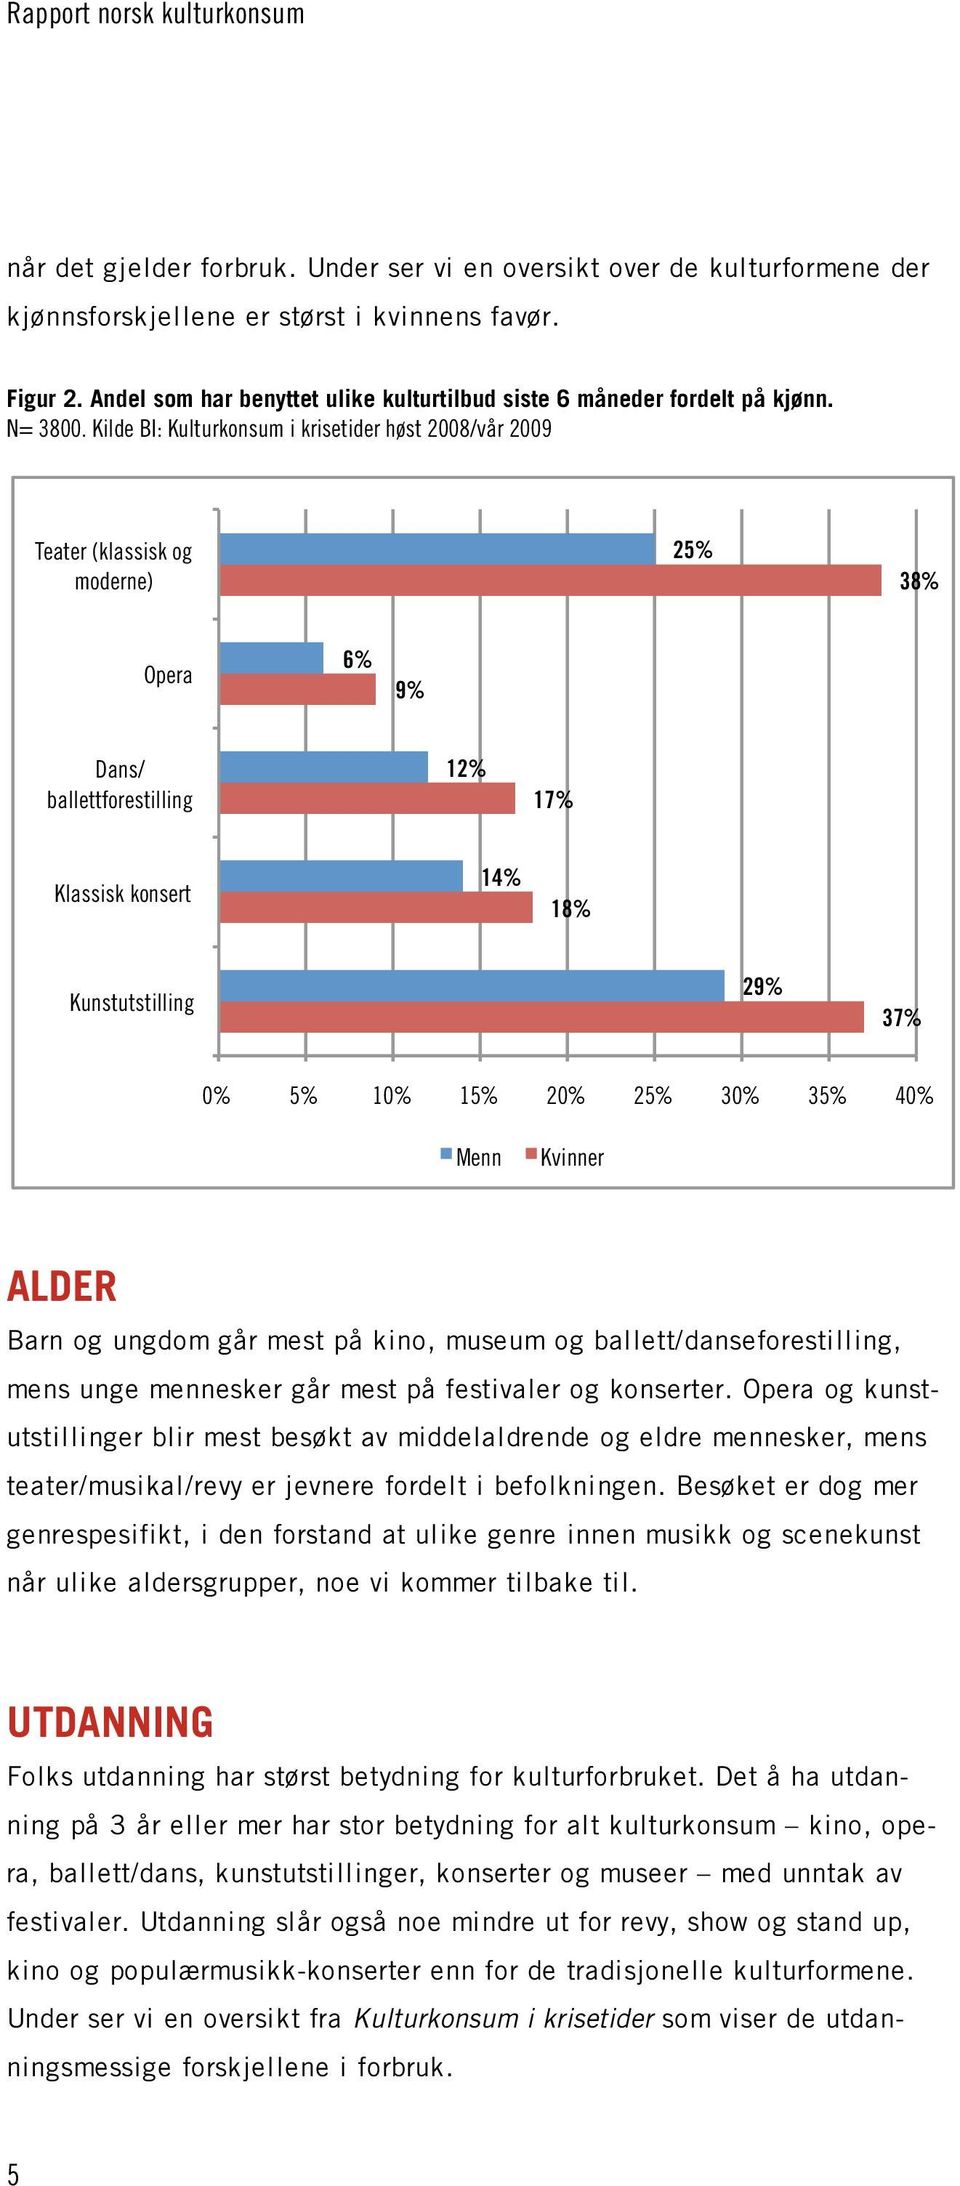 Teater (klassisk og moderne) 25% 38% Opera 6% 9% Dans/ ballettforestilling 12% 17% Klassisk konsert 14% 18% Kunstutstilling 29% 37% 0% 5% 10% 15% 20% 25% 30% 35% 40% Menn Kvinner ALDER Barn og ungdom